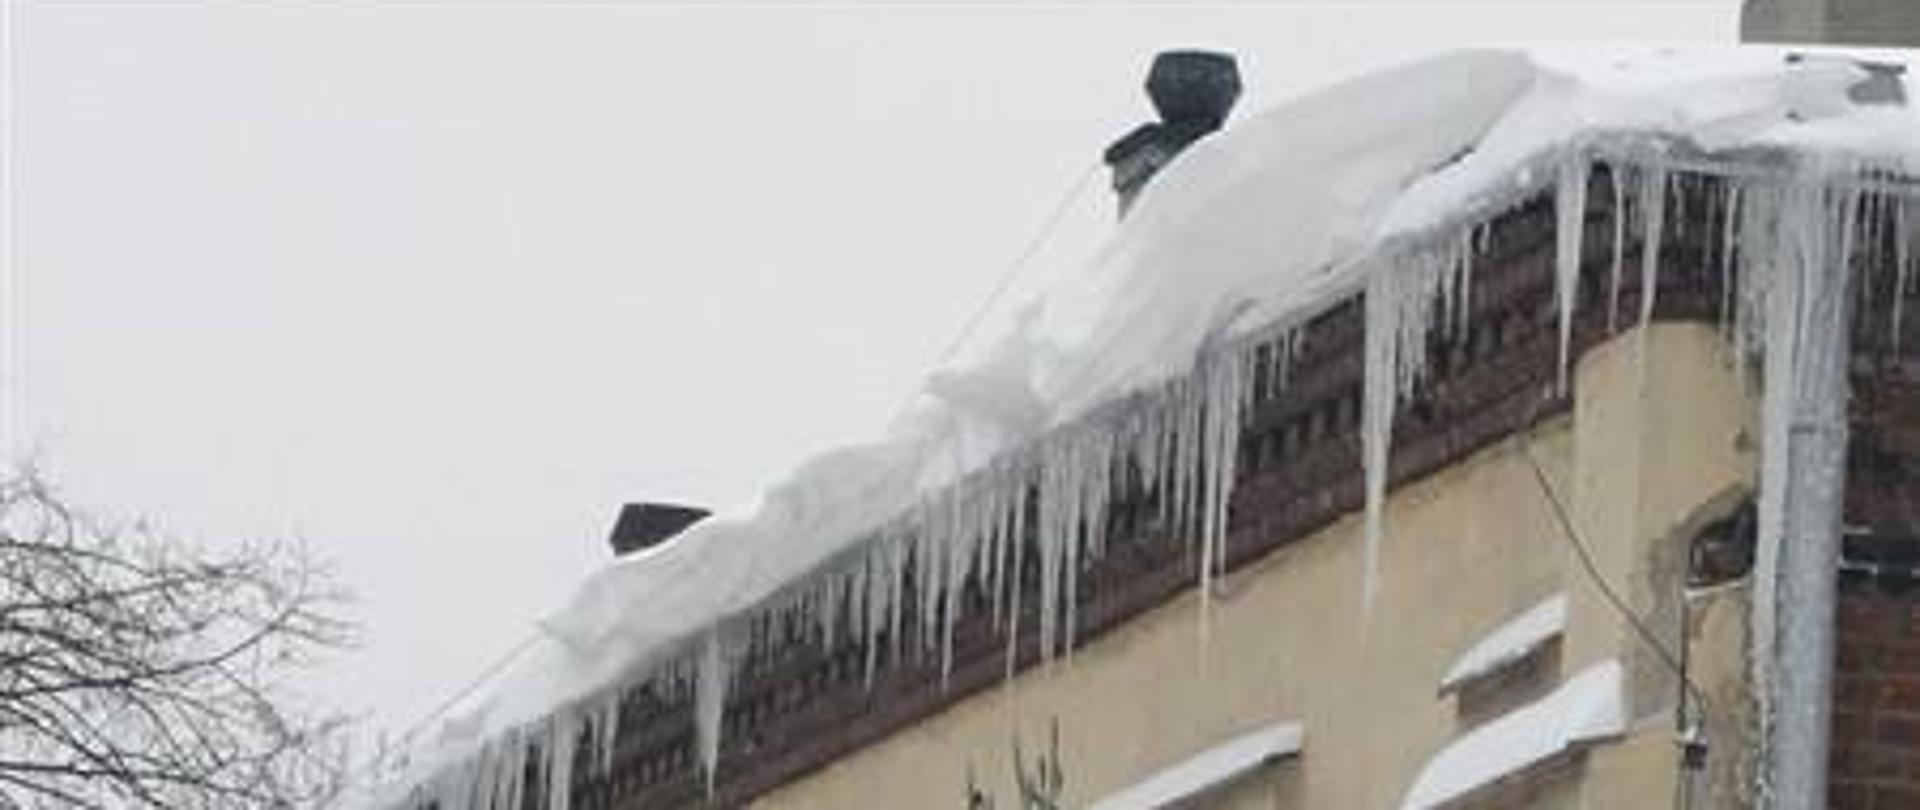 Nawisy śniegu i lodu widoczne na dachu budynku. Przypomnienie, że obowiązek odśnieżania dachów i usuwania nawisów śniegu i lodu, spoczywa na właścicielach, zarządcach i administratorach obiektów.